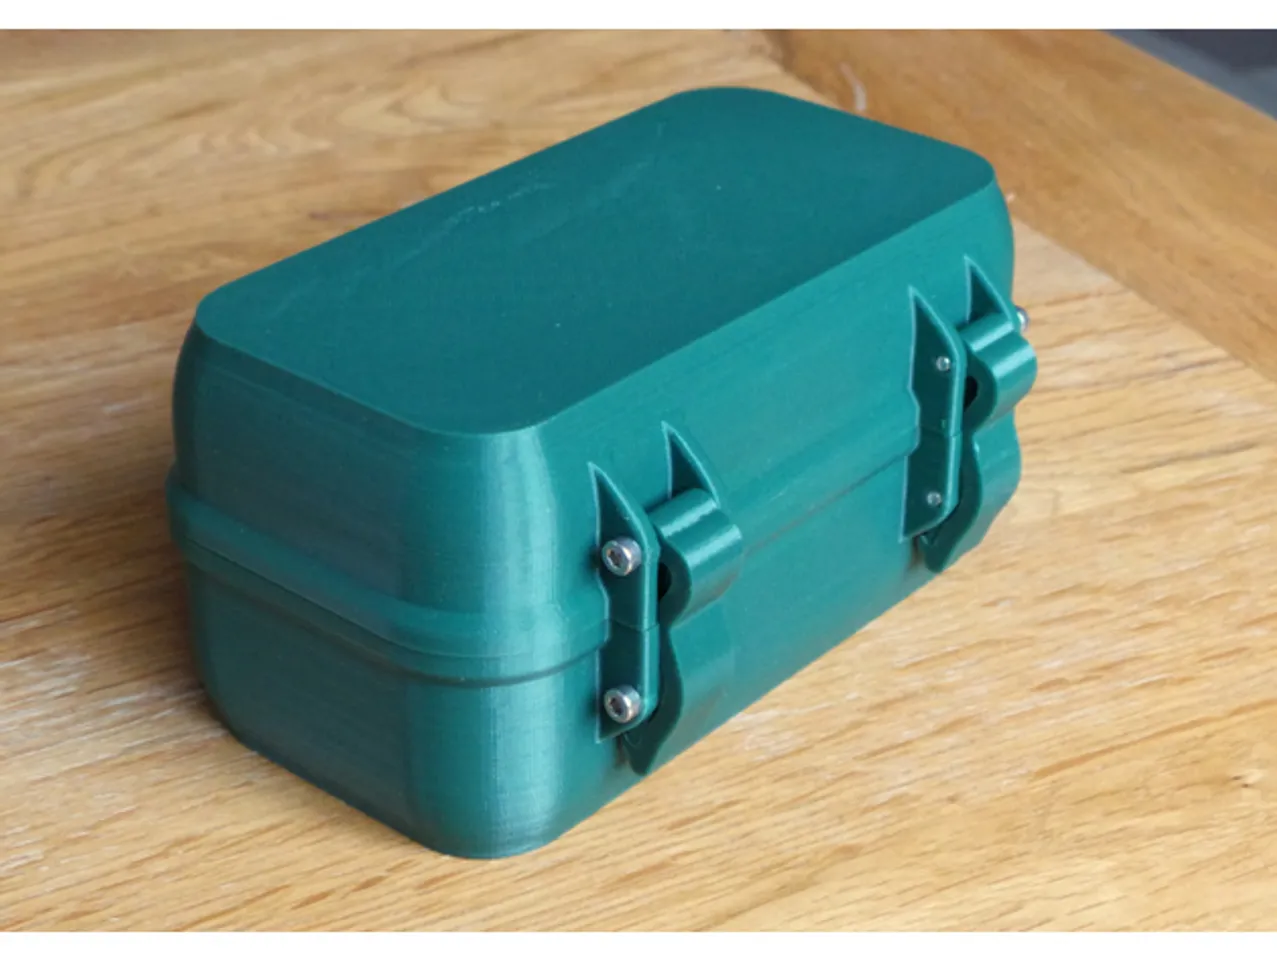 zx82net Customizable Rugged Waterproof Box by zx82net | Download 